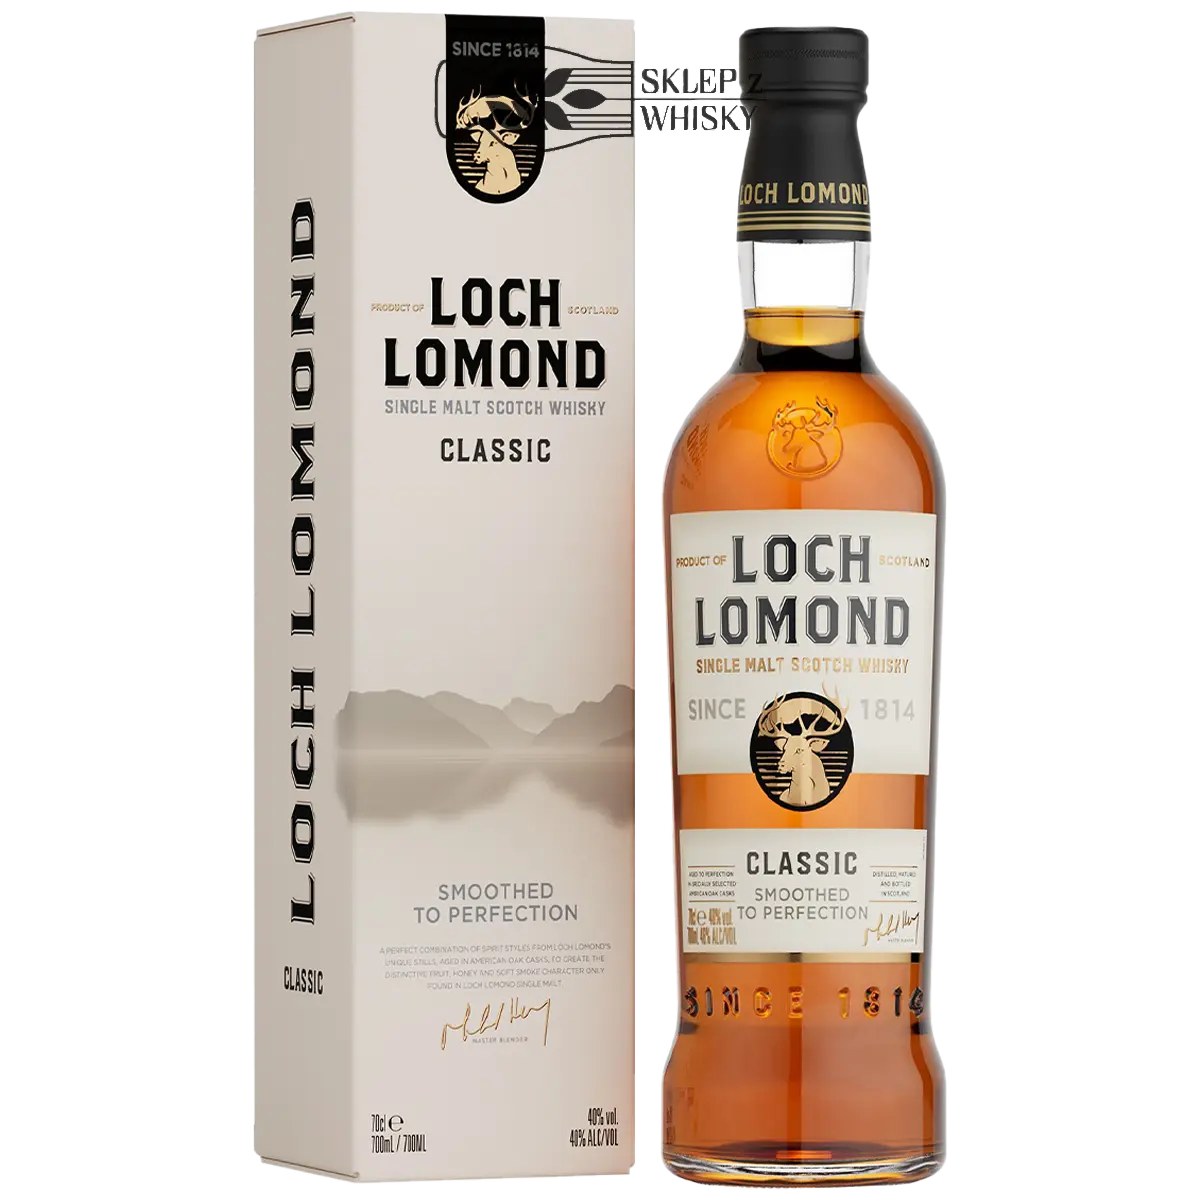 Loch Lomond Classic szkocka whisky single malt z regionu Highlands, 700 ml, w pudełku